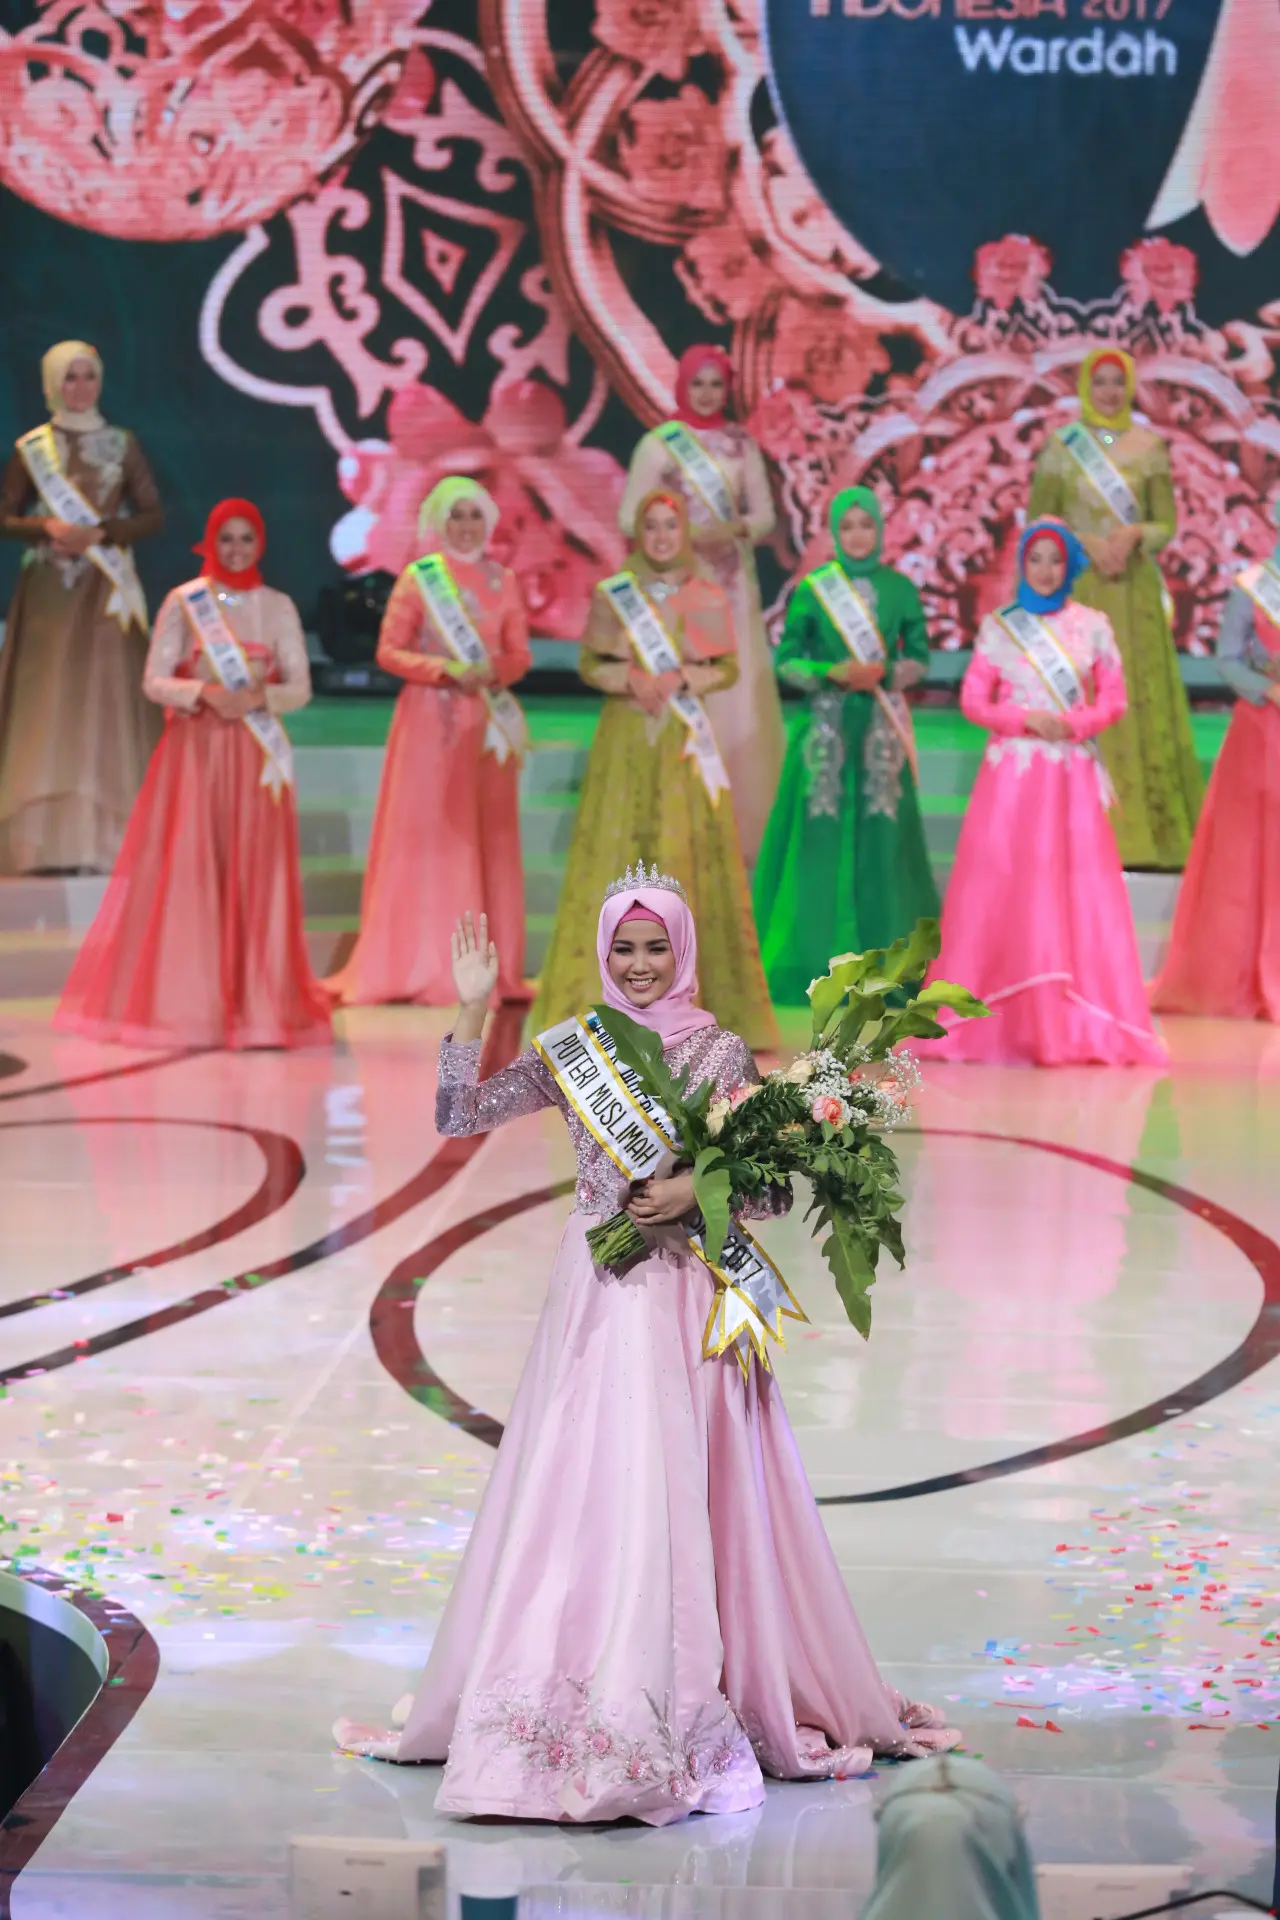 Syifa Fatimah saat dinobatkan menjadi Puteri Muslimah Indonesia 2017. (Adrian Putra/Bintang.com)